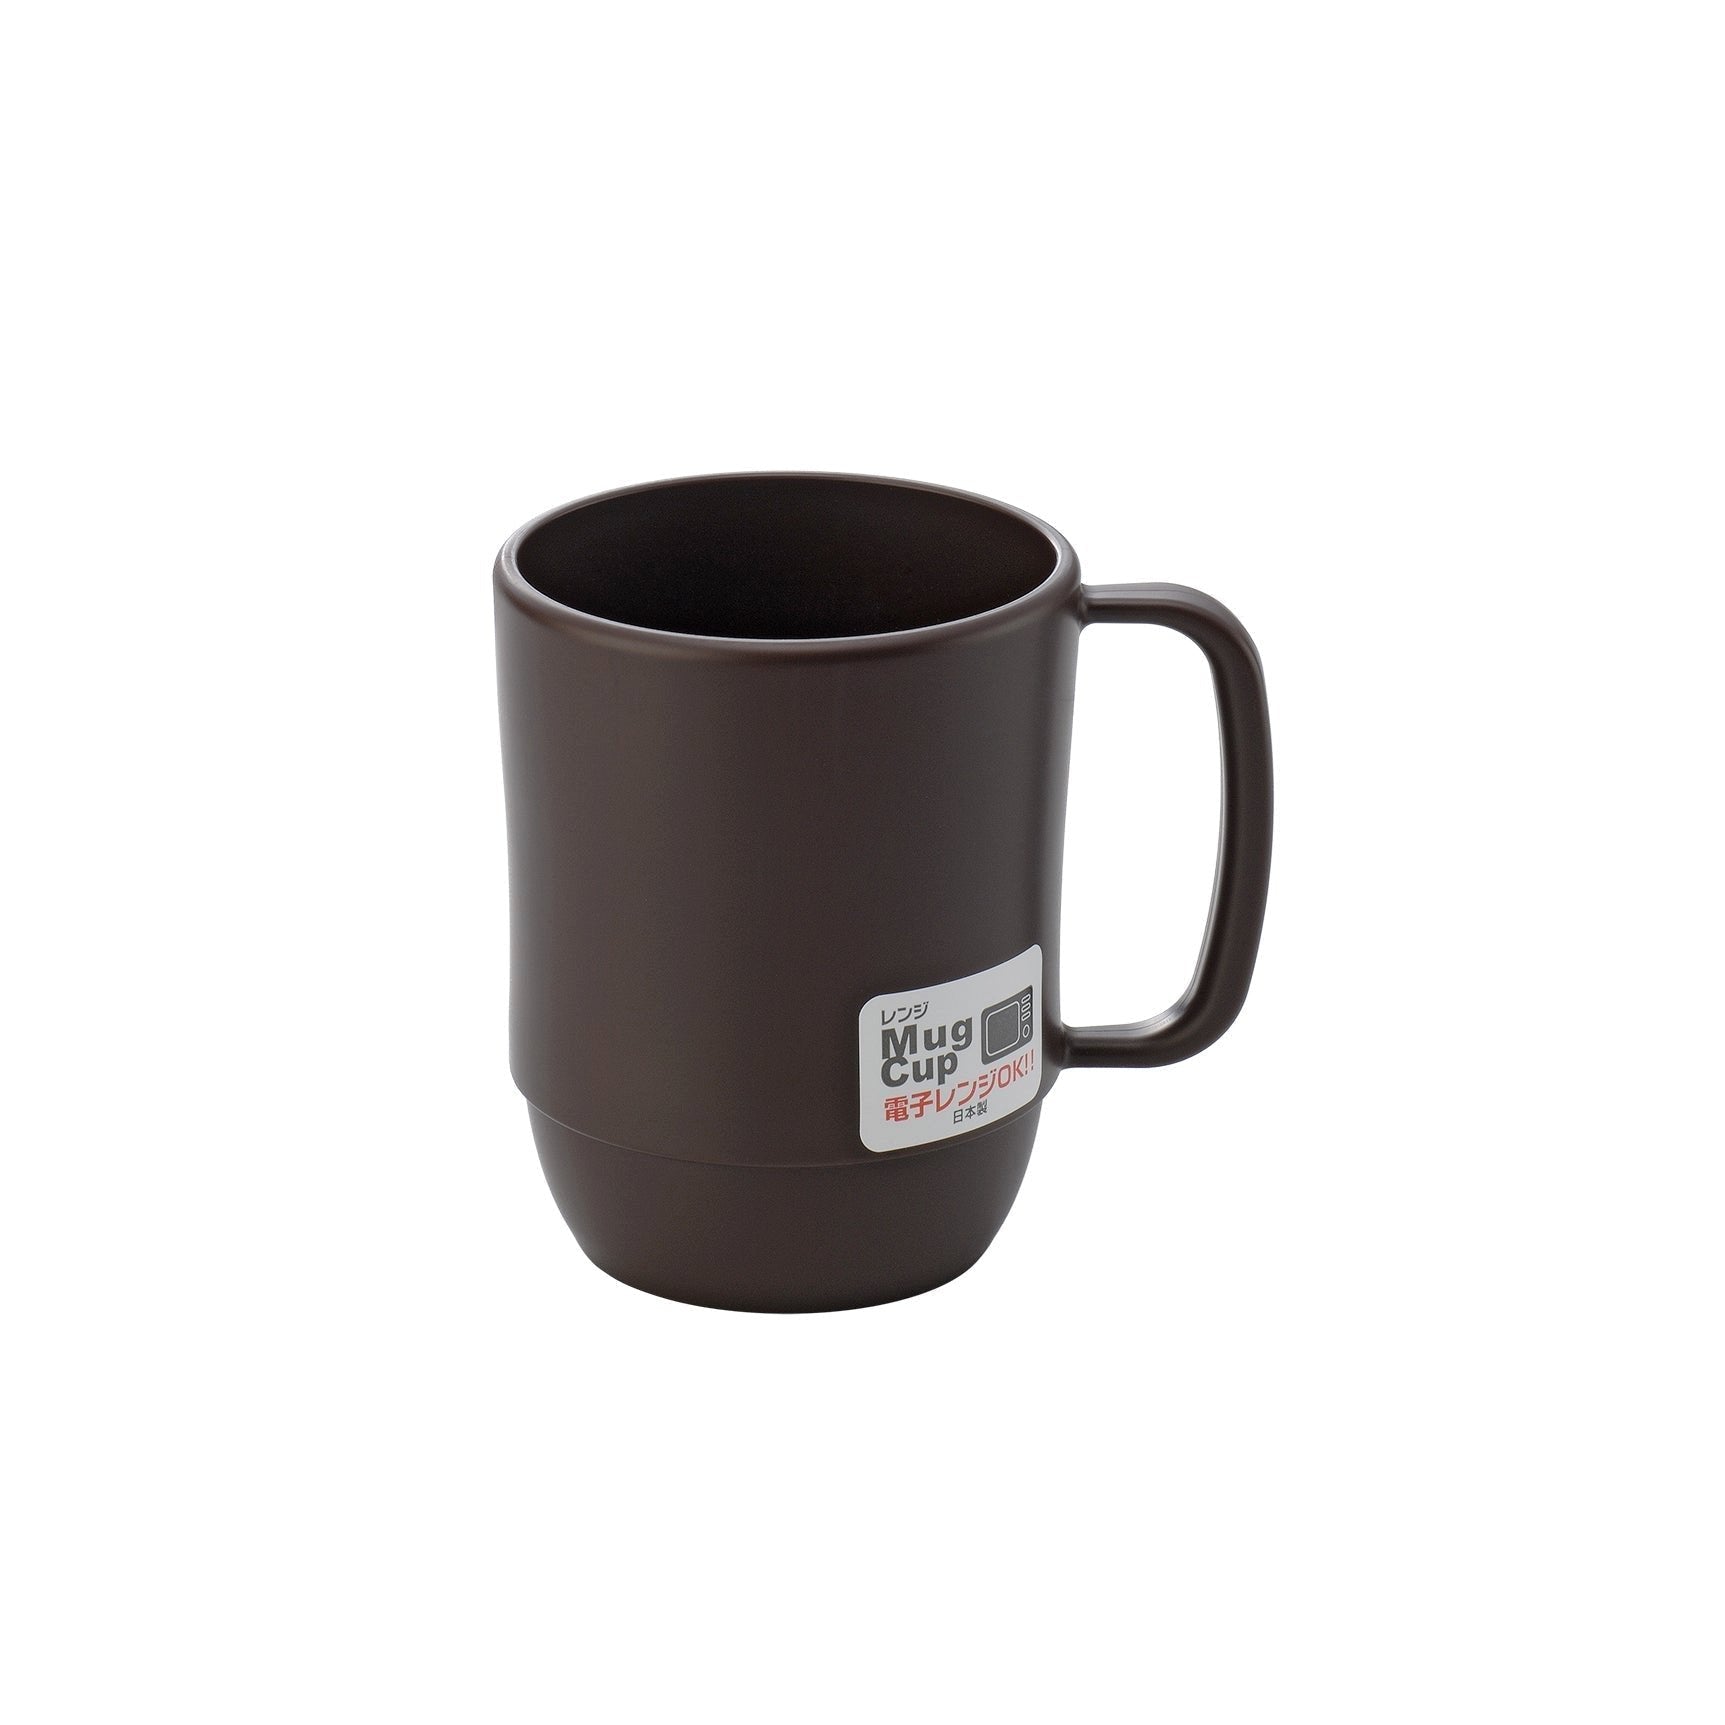 P-1-INMT-COFMUG-BR1-Inomata Microwavable Plastic Coffee Mug Brown.jpg